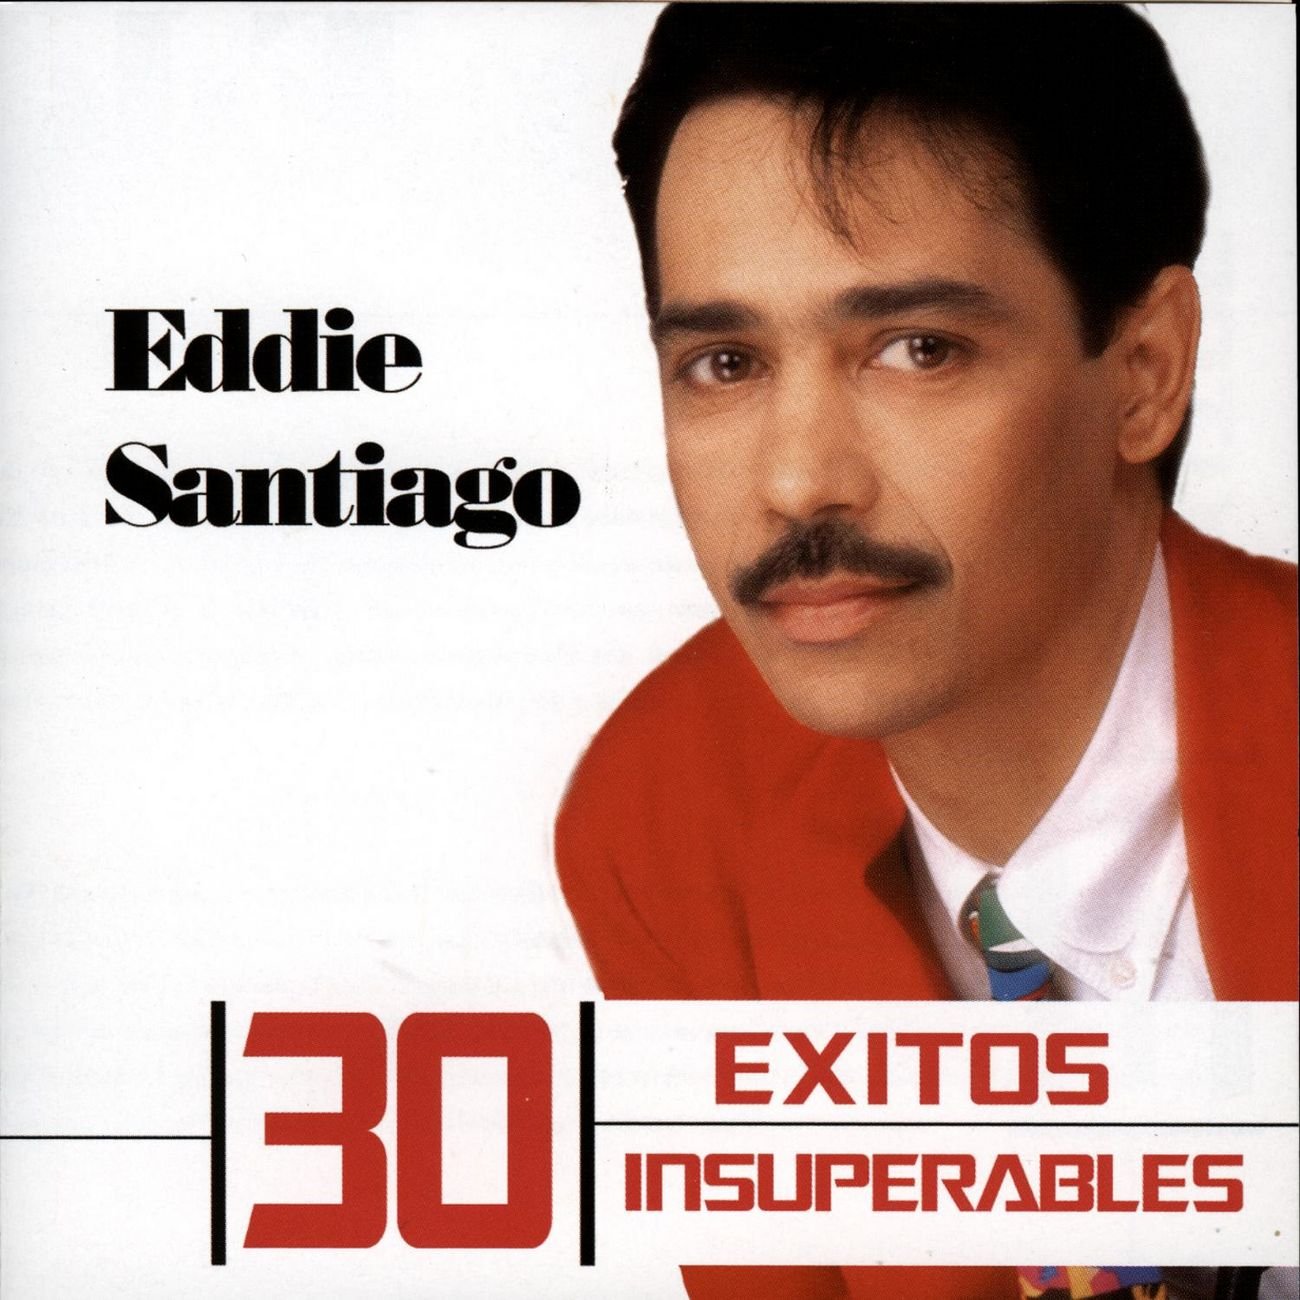 30 Exitos Insuperables — Eddie Santiago | Last.fm